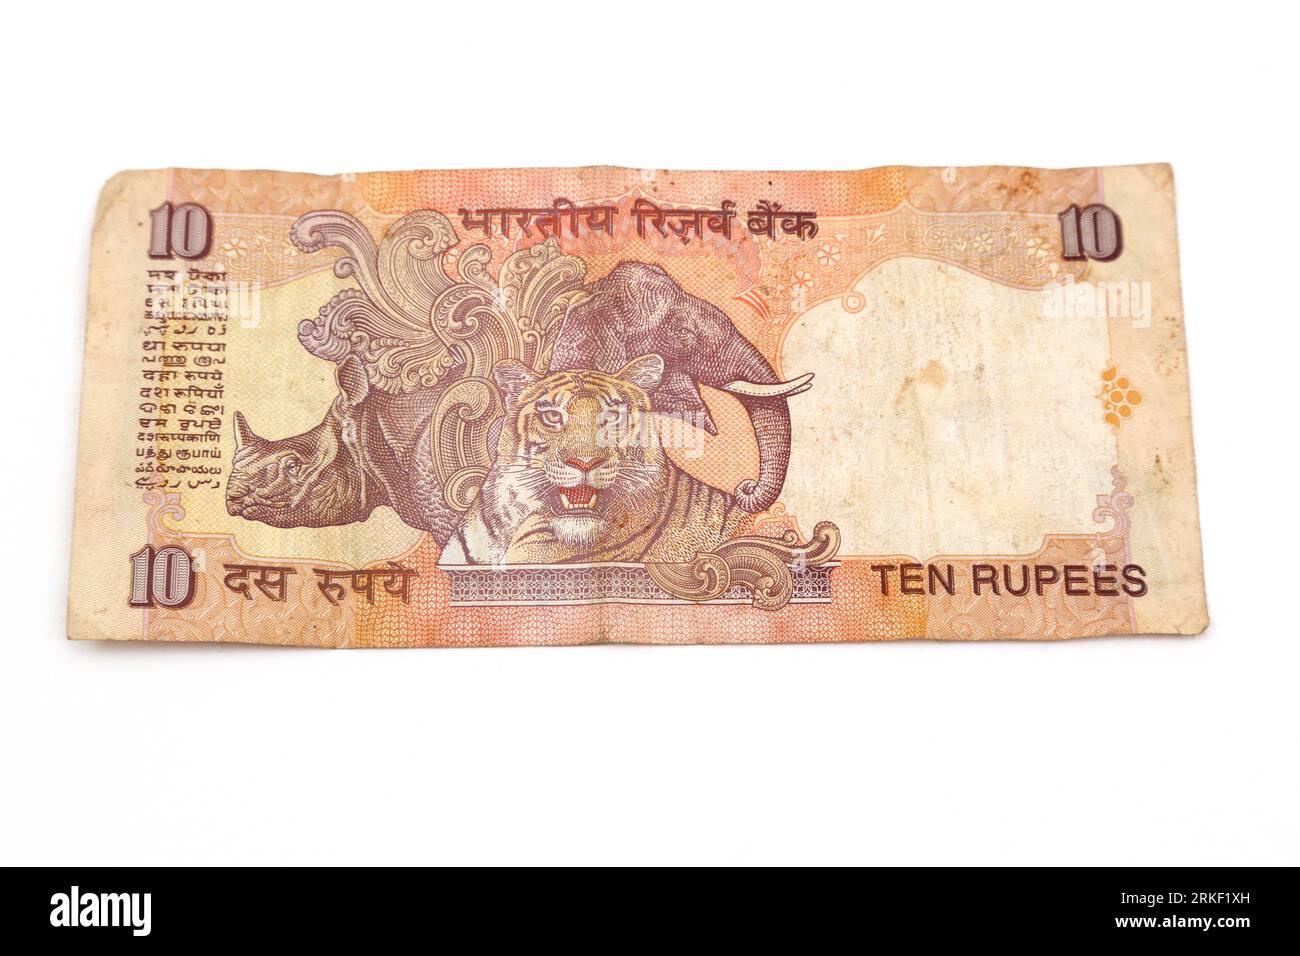 Reserve Bank of India Mahatma Gandhi série 10 roupies billet de banque inversé montrant rhinocéros indien, éléphant et tigre du Bengale émis 1996-courant Banque D'Images